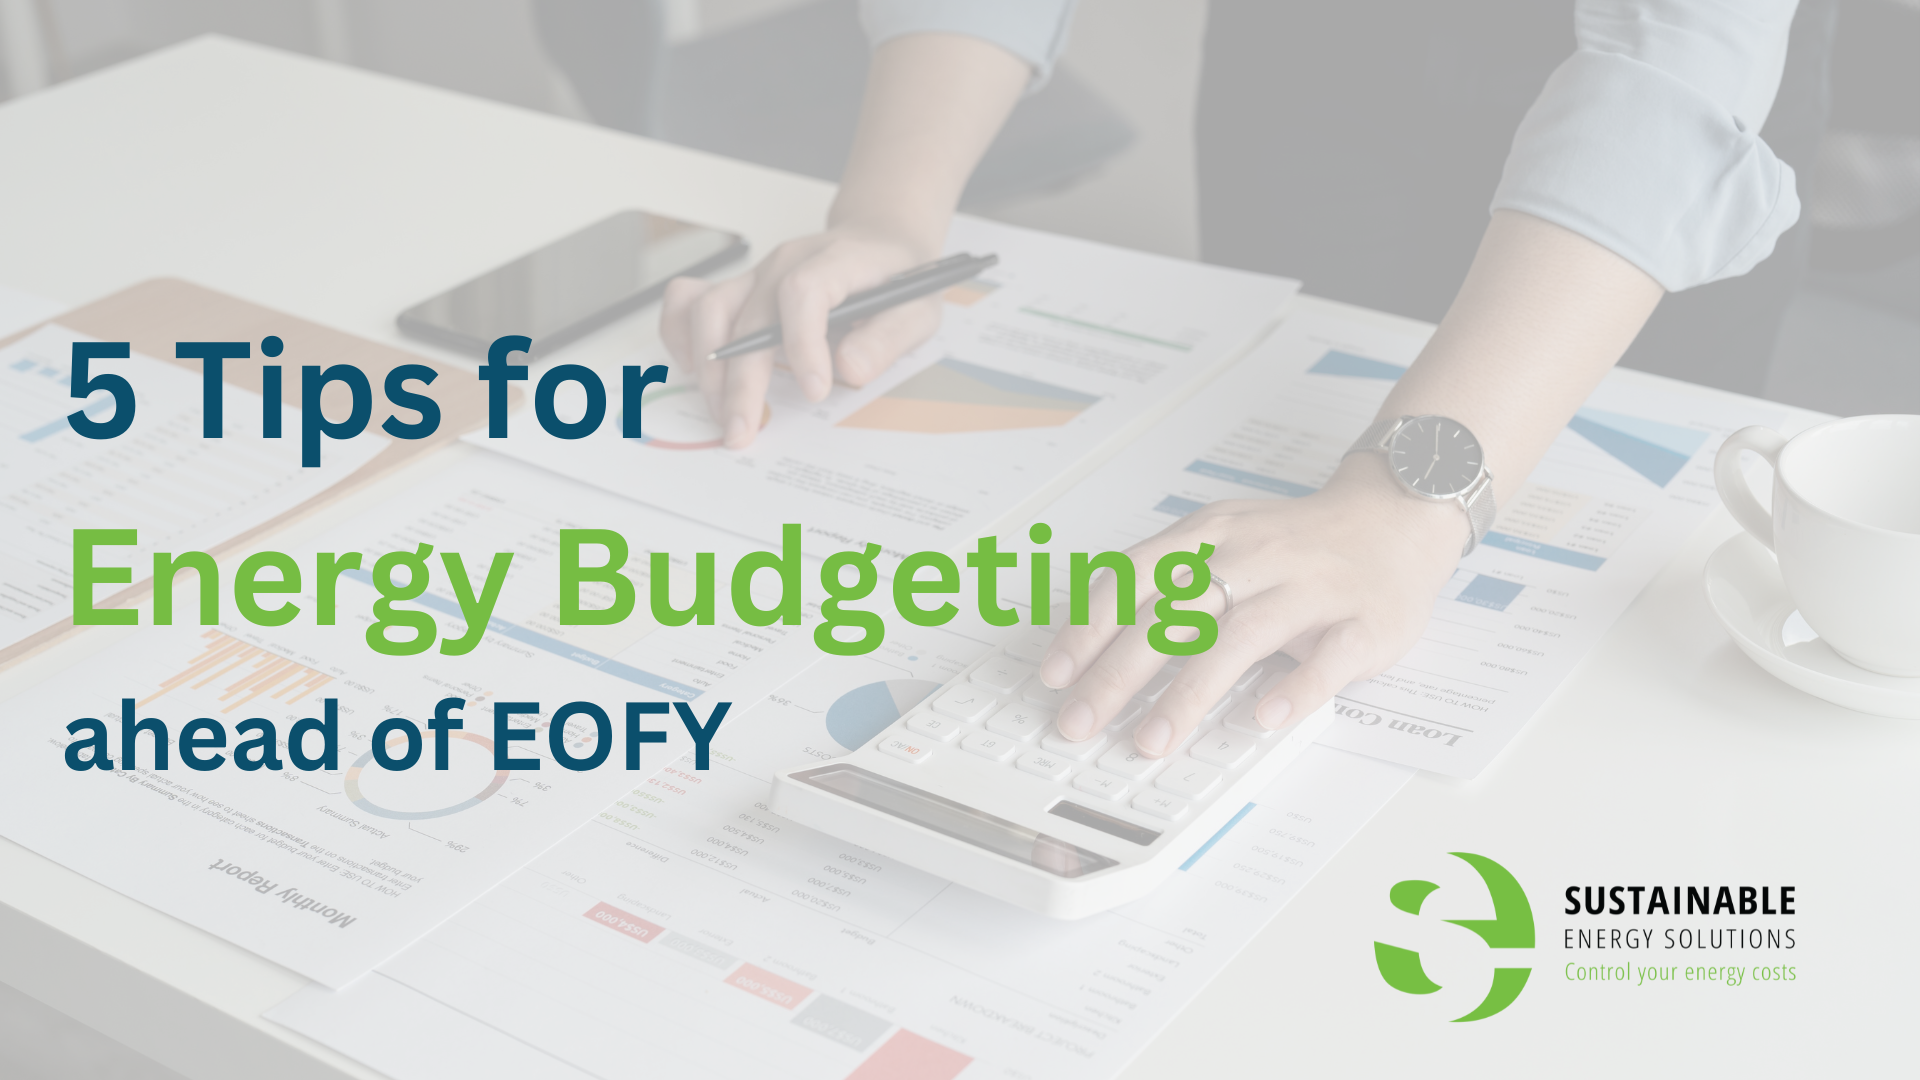 5 Energy Budgeting Tips ahead of EOFY